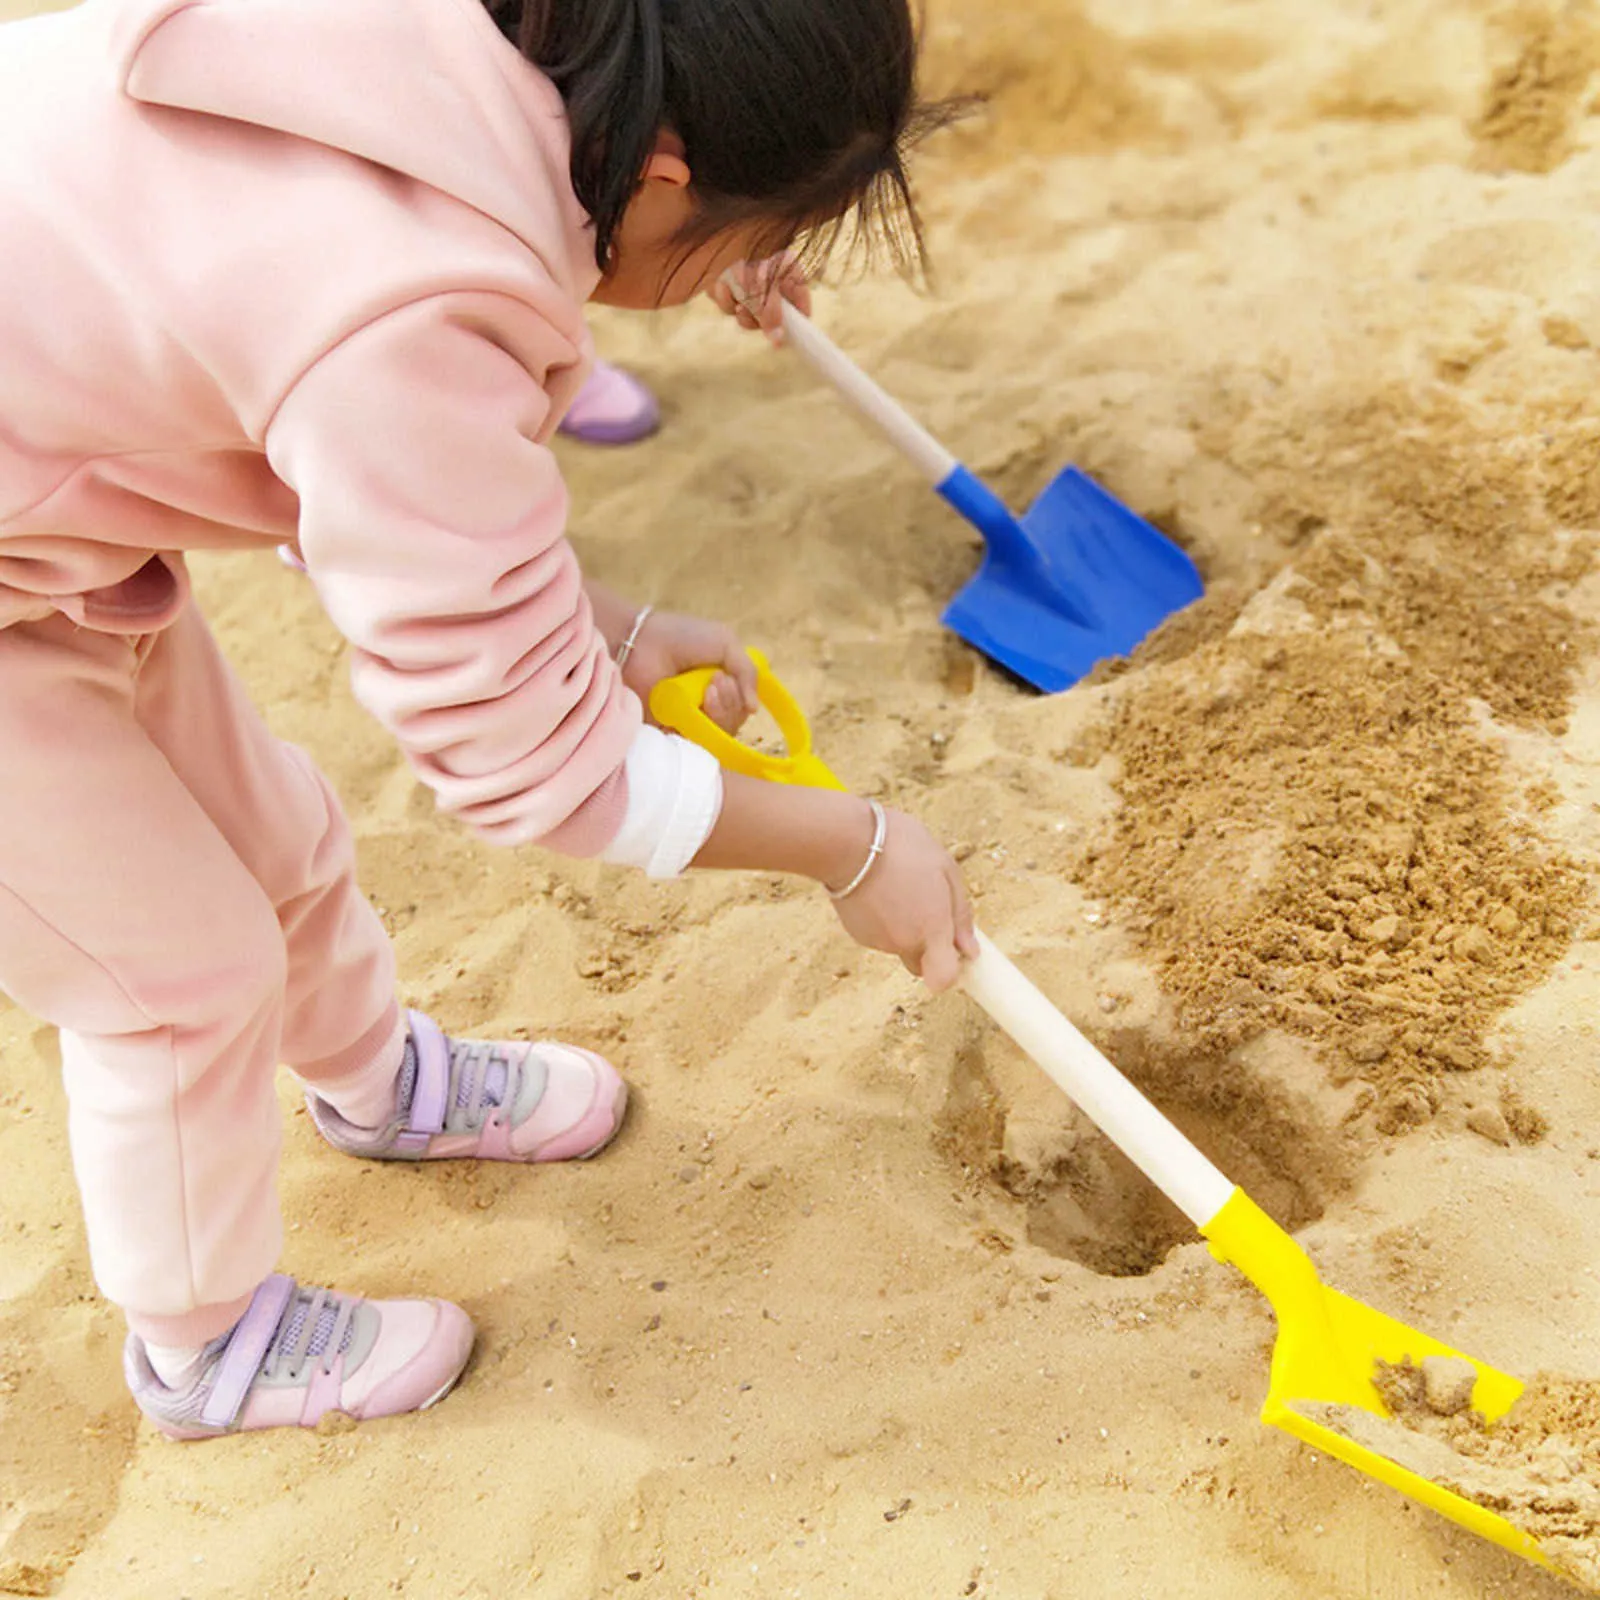 1 stks kinderen sneeuw schop kinderen strand schop met houten handvat spelen zand tool spelen schoppen spelen huis speelgoed zomer # P30 y0809